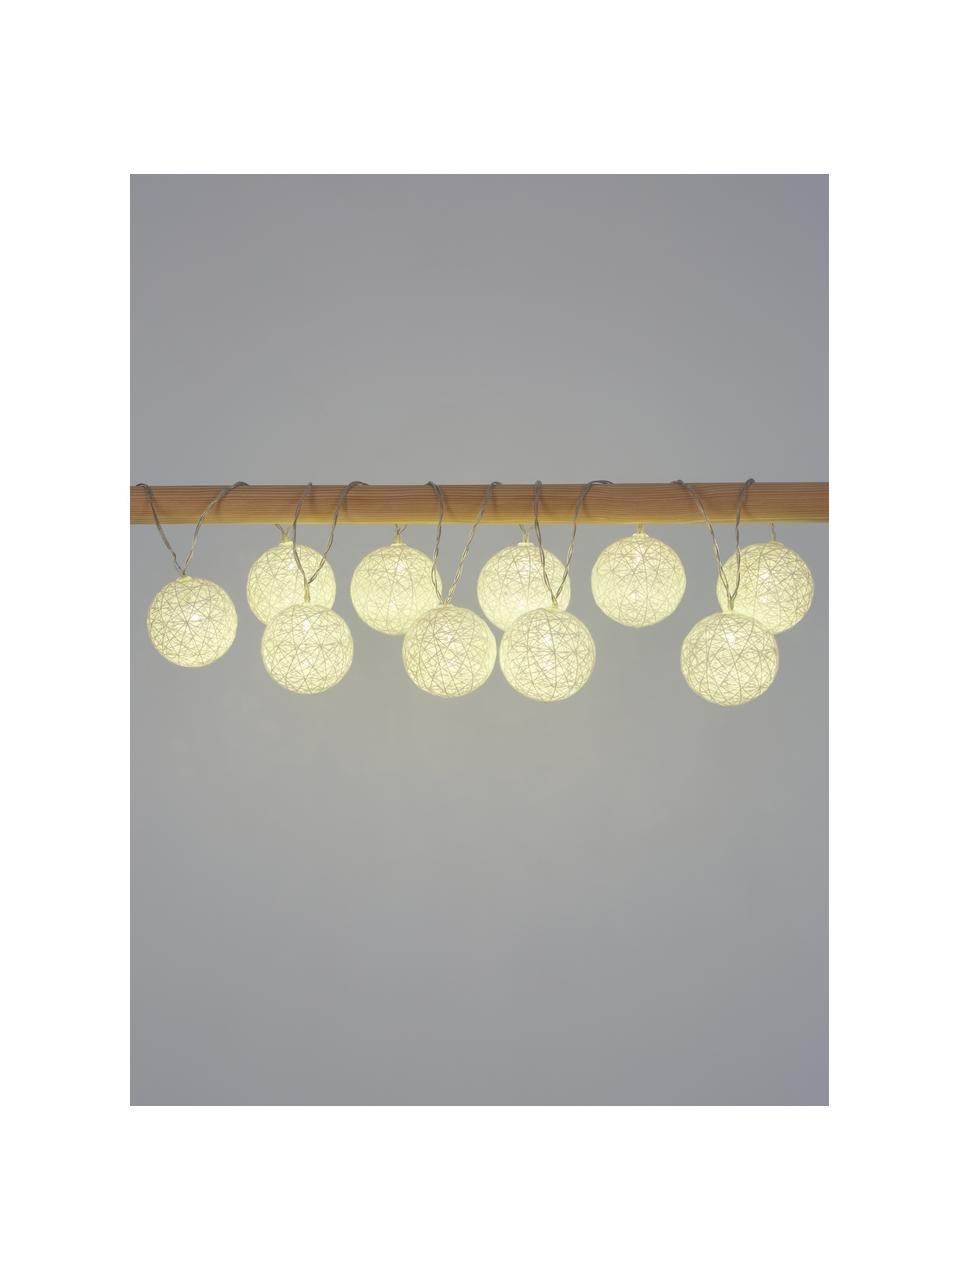 Girlanda świetlna LED Jolly Lights, dł. 435 cm i 10 lampionów, Biały, D 435 cm